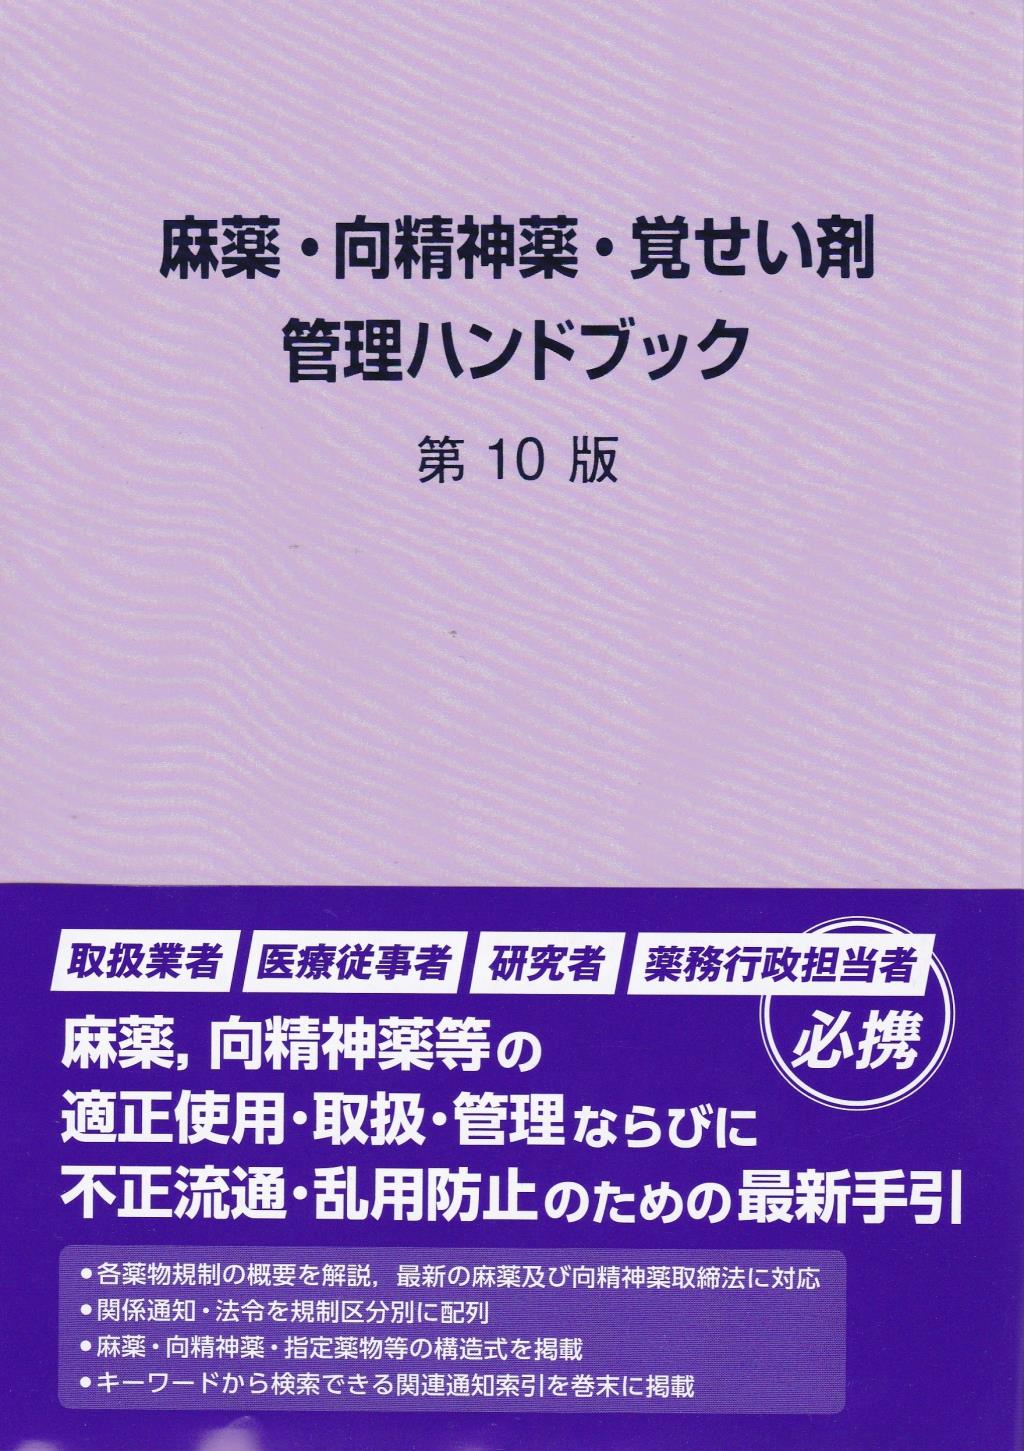 麻薬・向精神薬・覚醒剤管理ハンドブック第11版 - 健康/医学